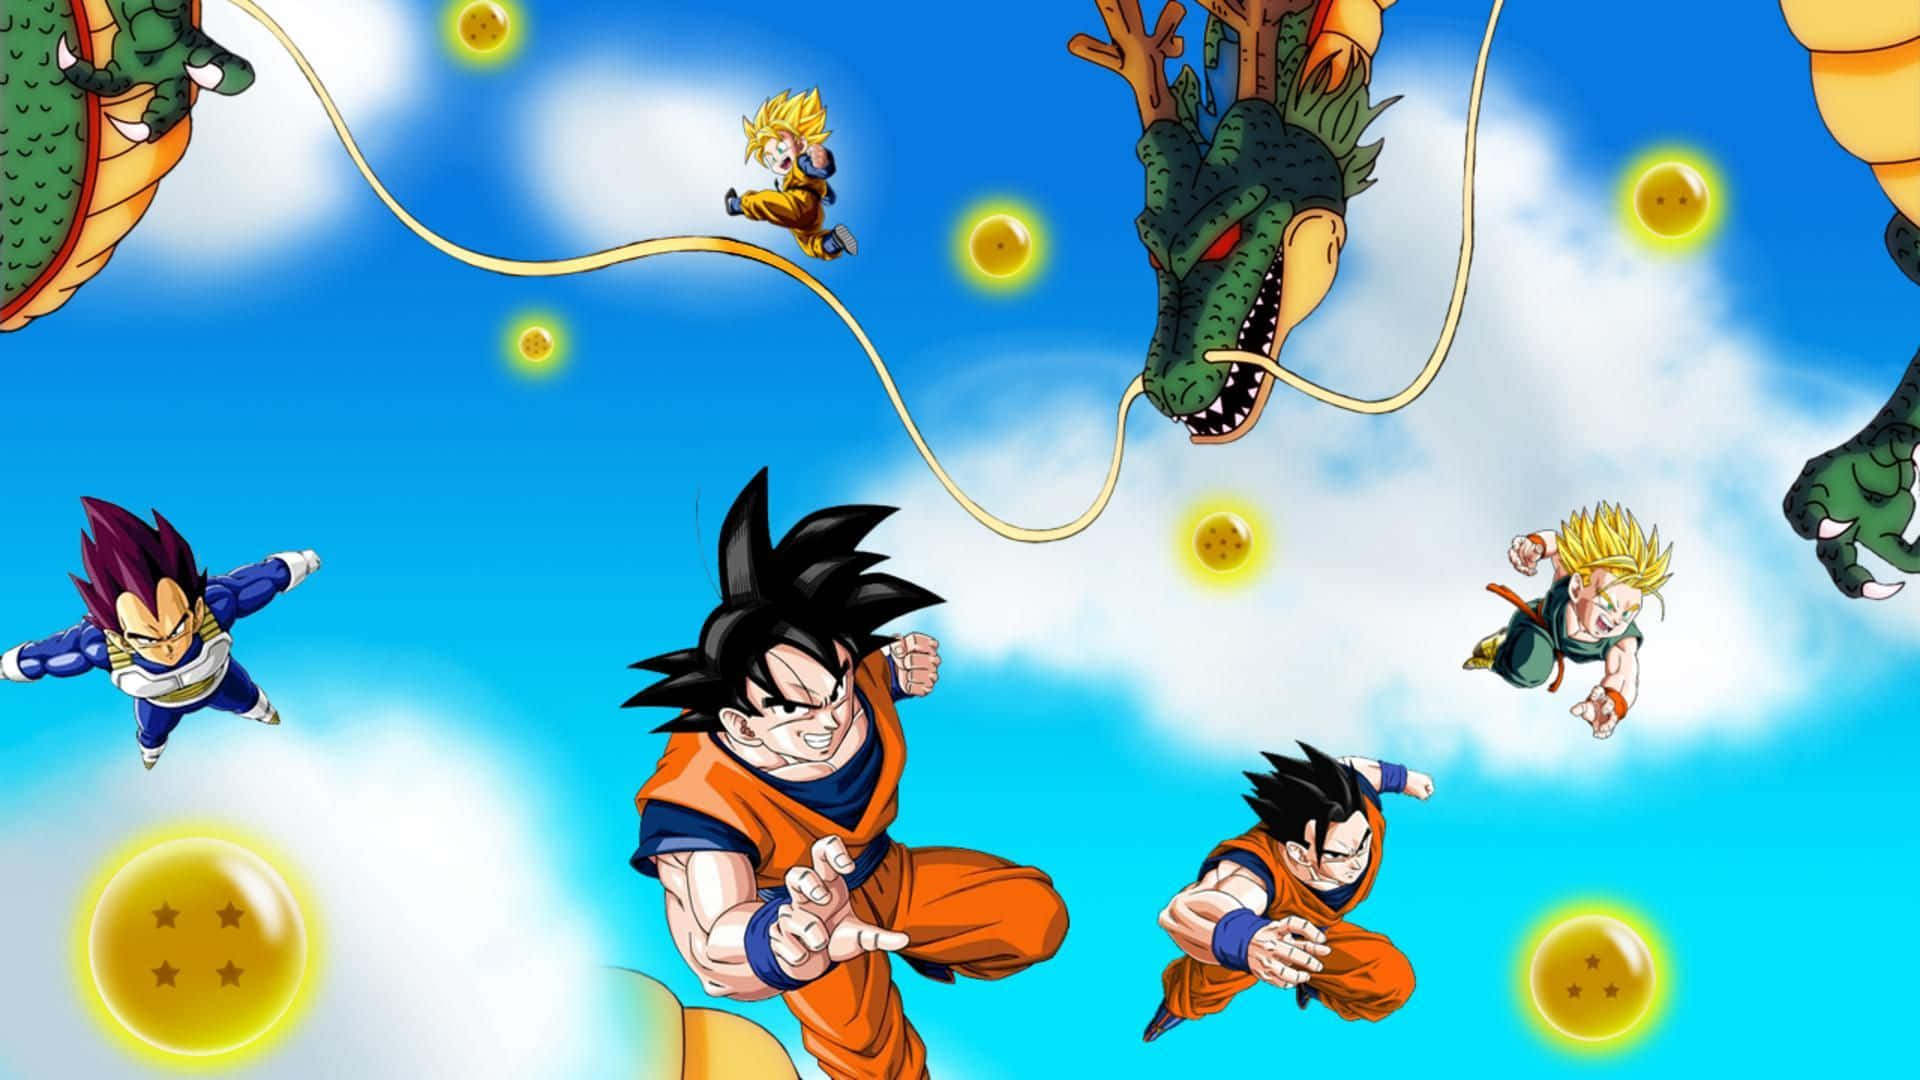 Imagende Goku Con Su Familia Y Amigos.